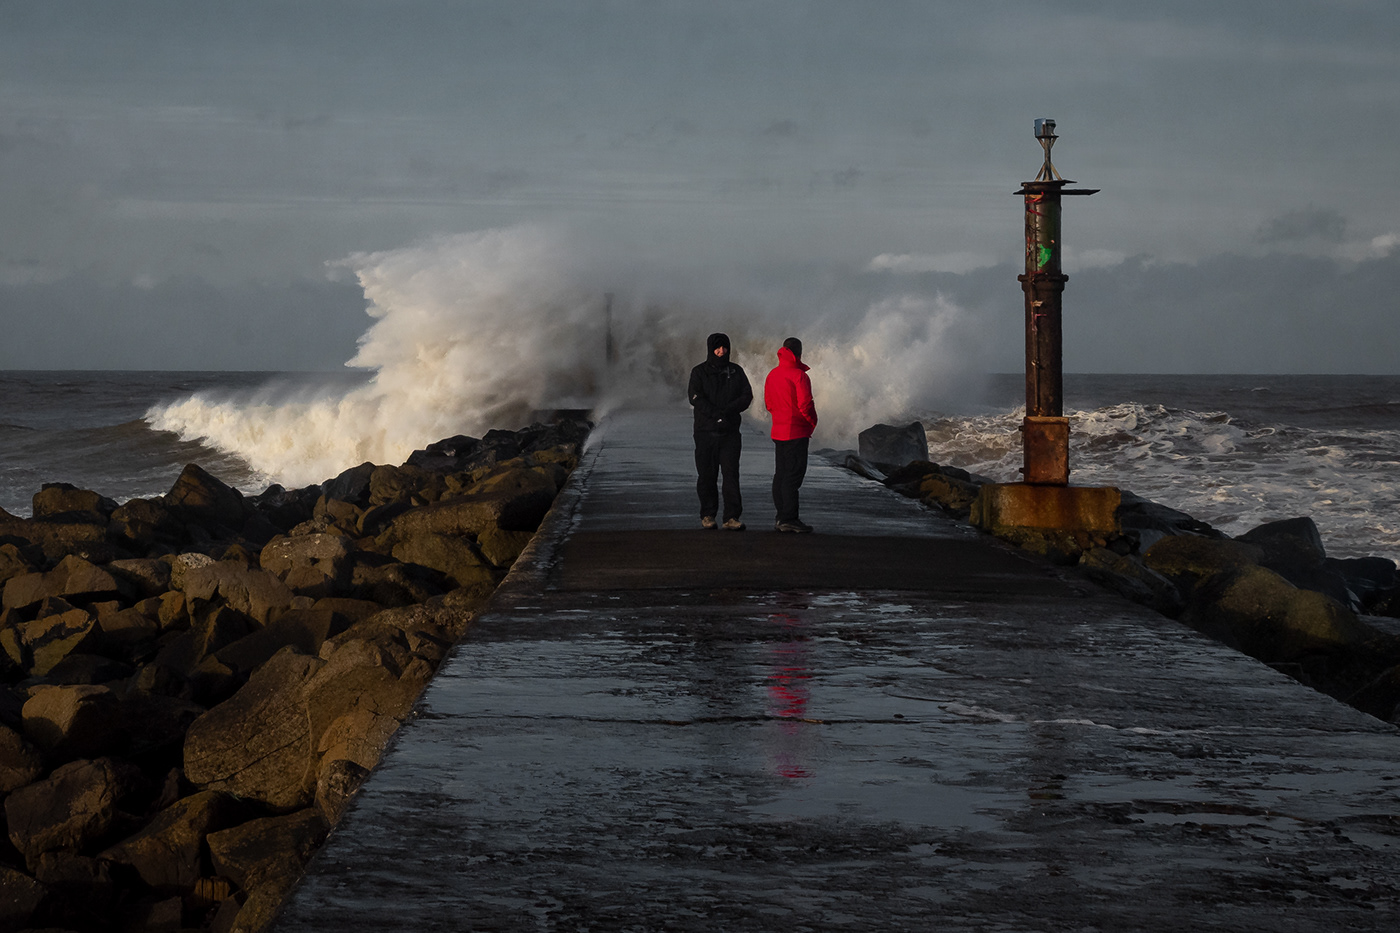 storm waves danger Powerful pier seascape atmospheric sea Ocean